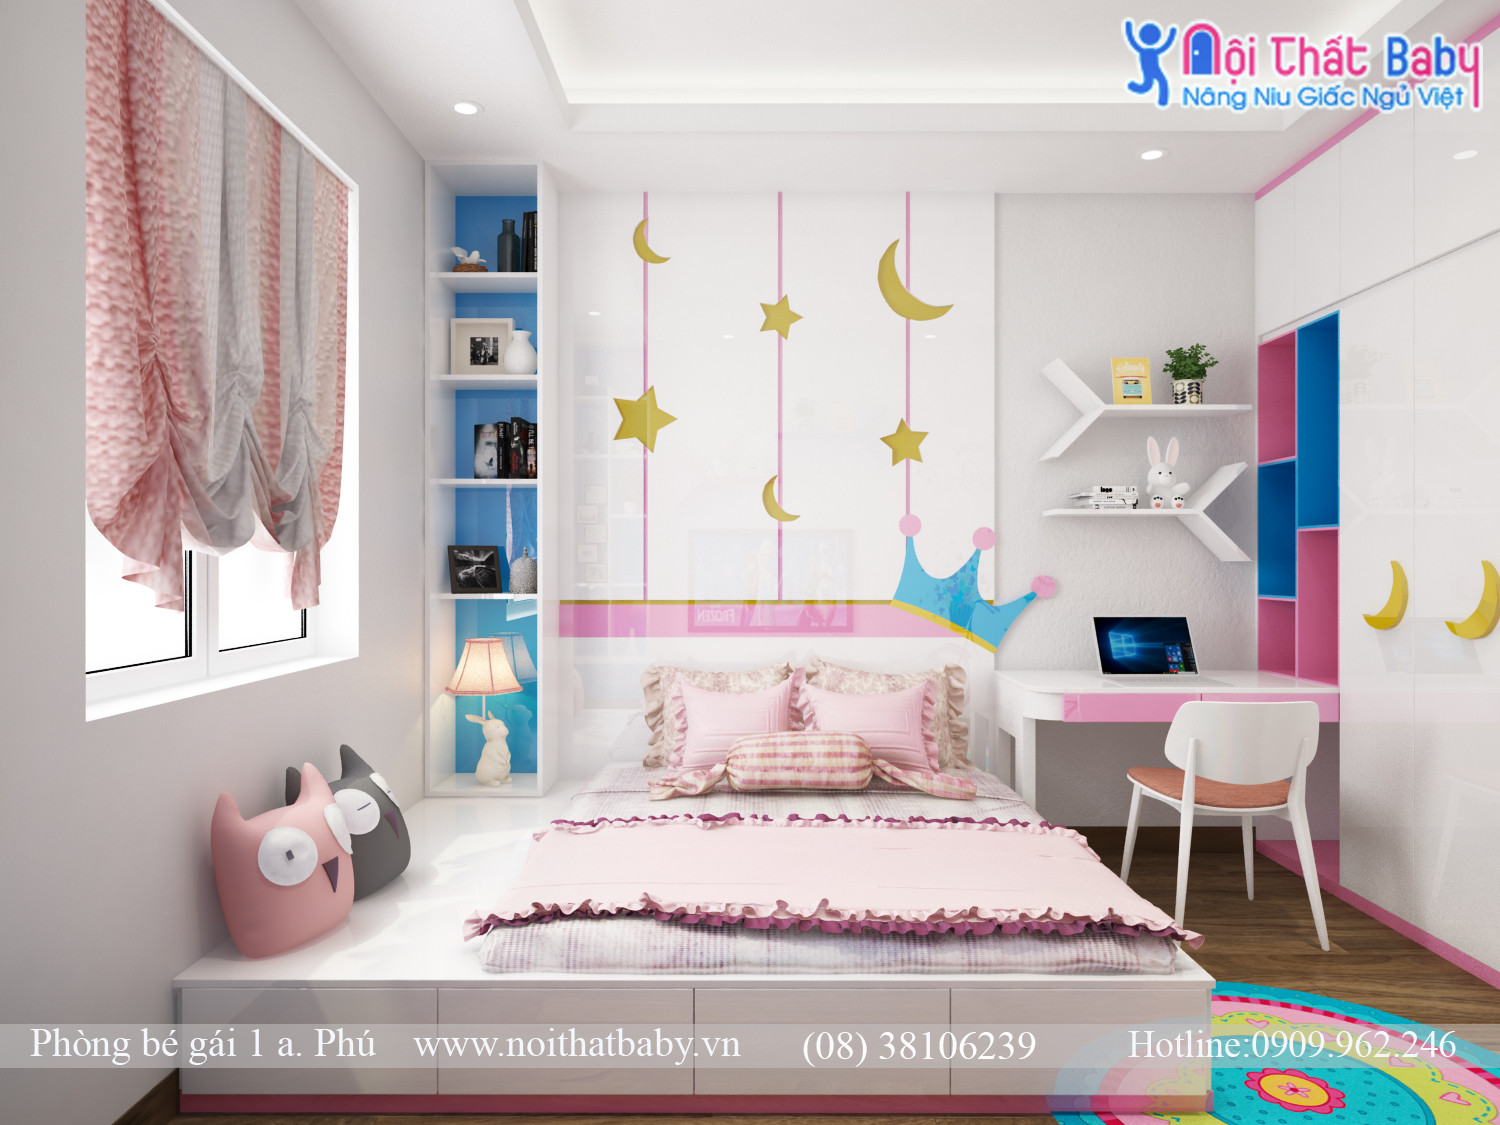 Với gam màu hồng xanh tươi, phòng ngủ bé gái sẽ trở nên đầy màu sắc và năng động. Từ những chiếc giường cỡ nhỏ cho đến các tủ đồ xinh xắn, các sản phẩm trên trang web của chúng tôi sẽ giúp bạn tạo nên không gian sống ấm áp và đáng yêu cho cô công chúa nhỏ của mình.